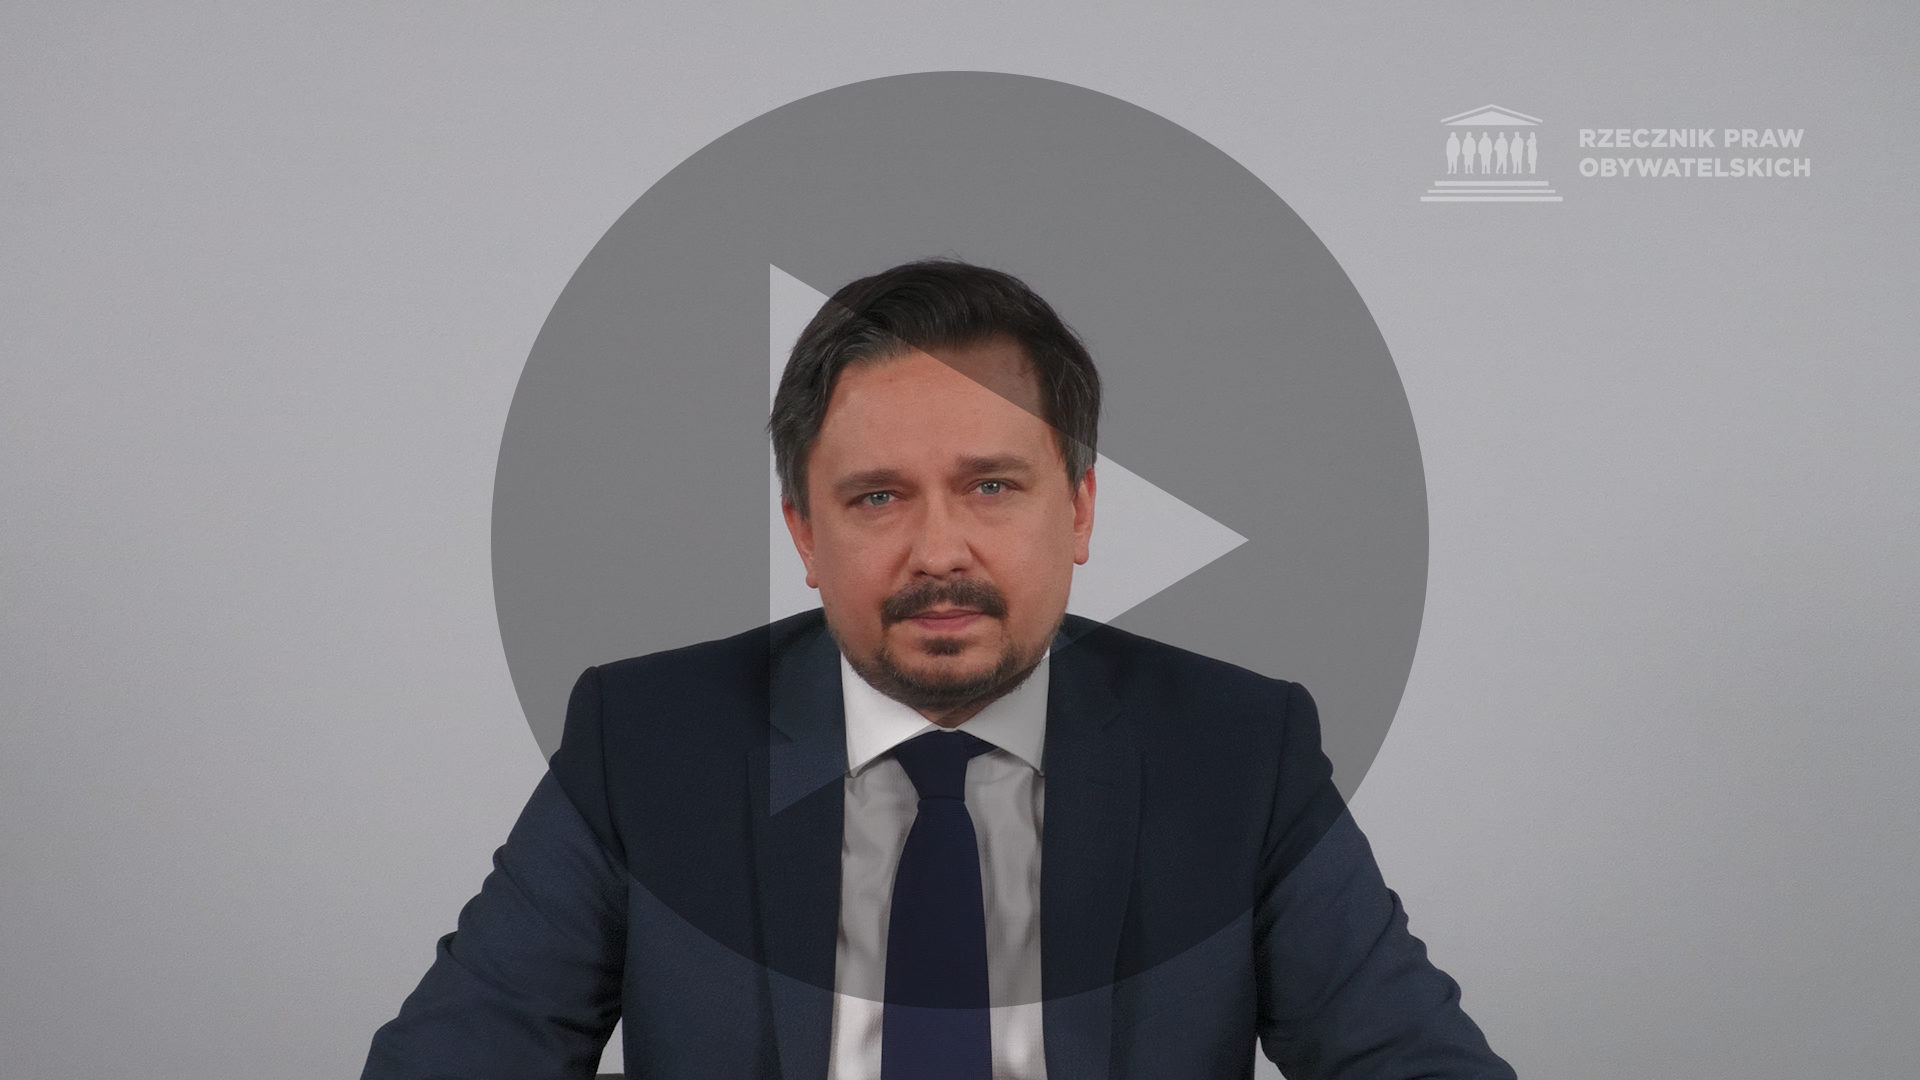 Kadr z nagrania przedstawiający RPO Marcina Wiącka z naniesionym symbolem odtwarzania wideo - trójkątem w kole